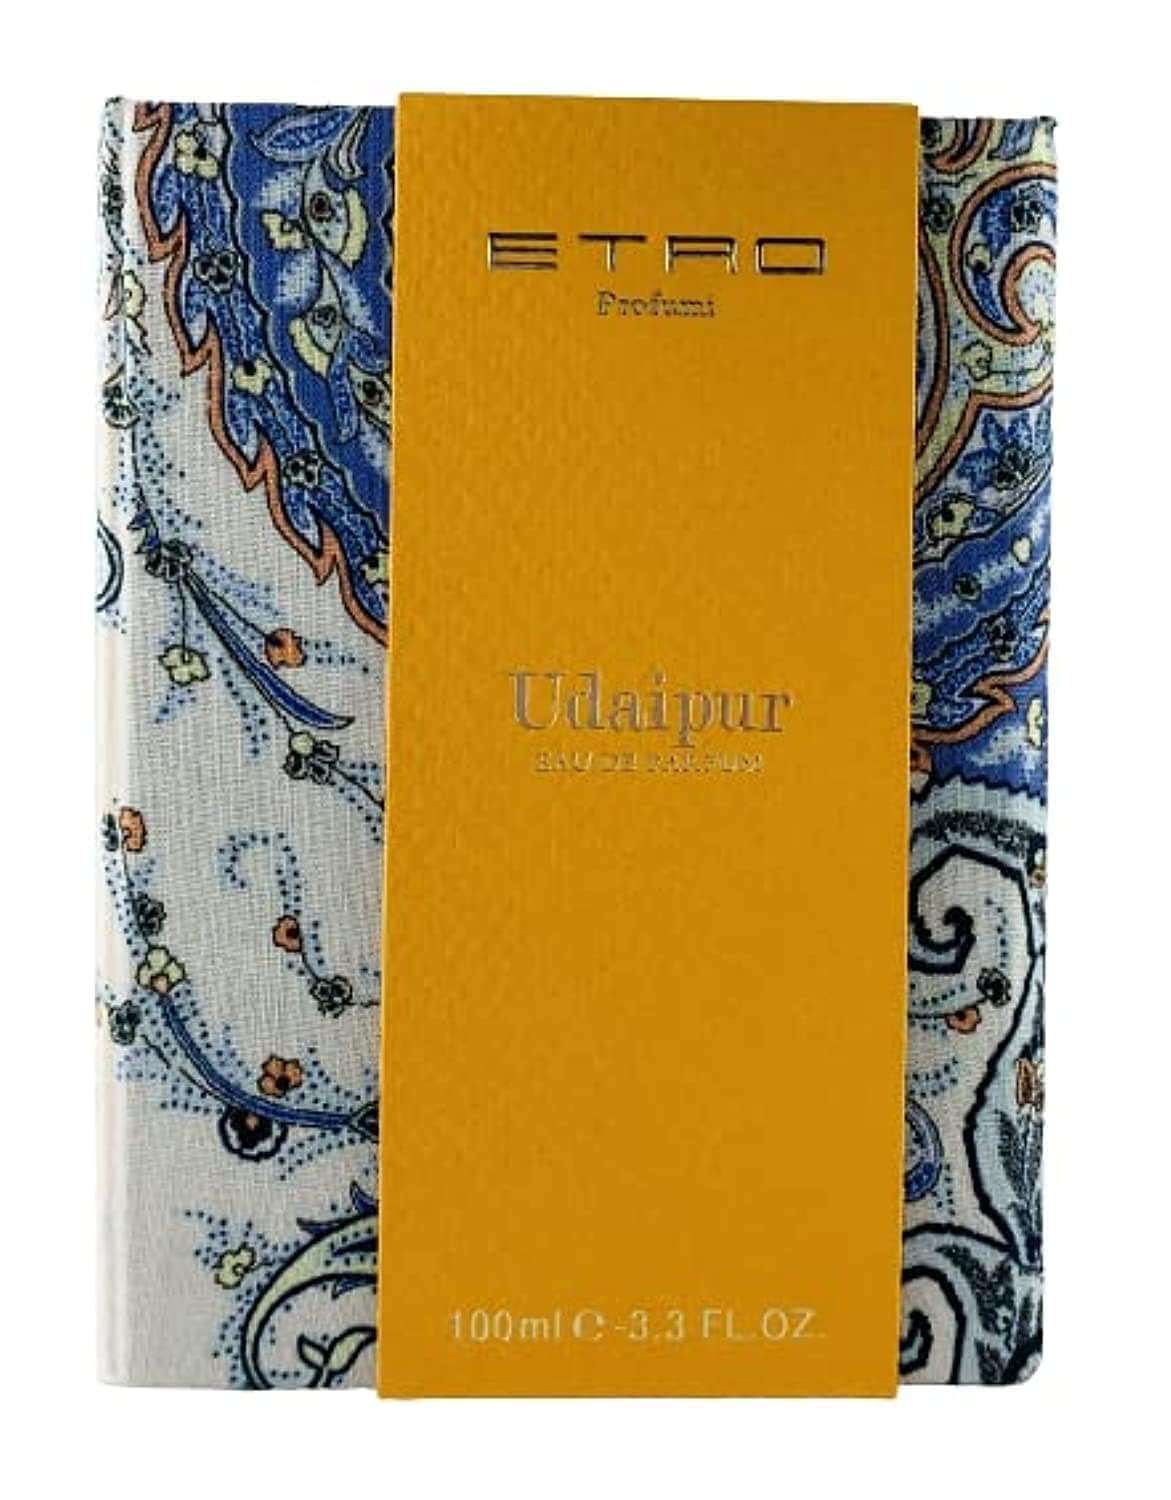 Etro Profumi Udaipur Eau de Parfum 100 ml